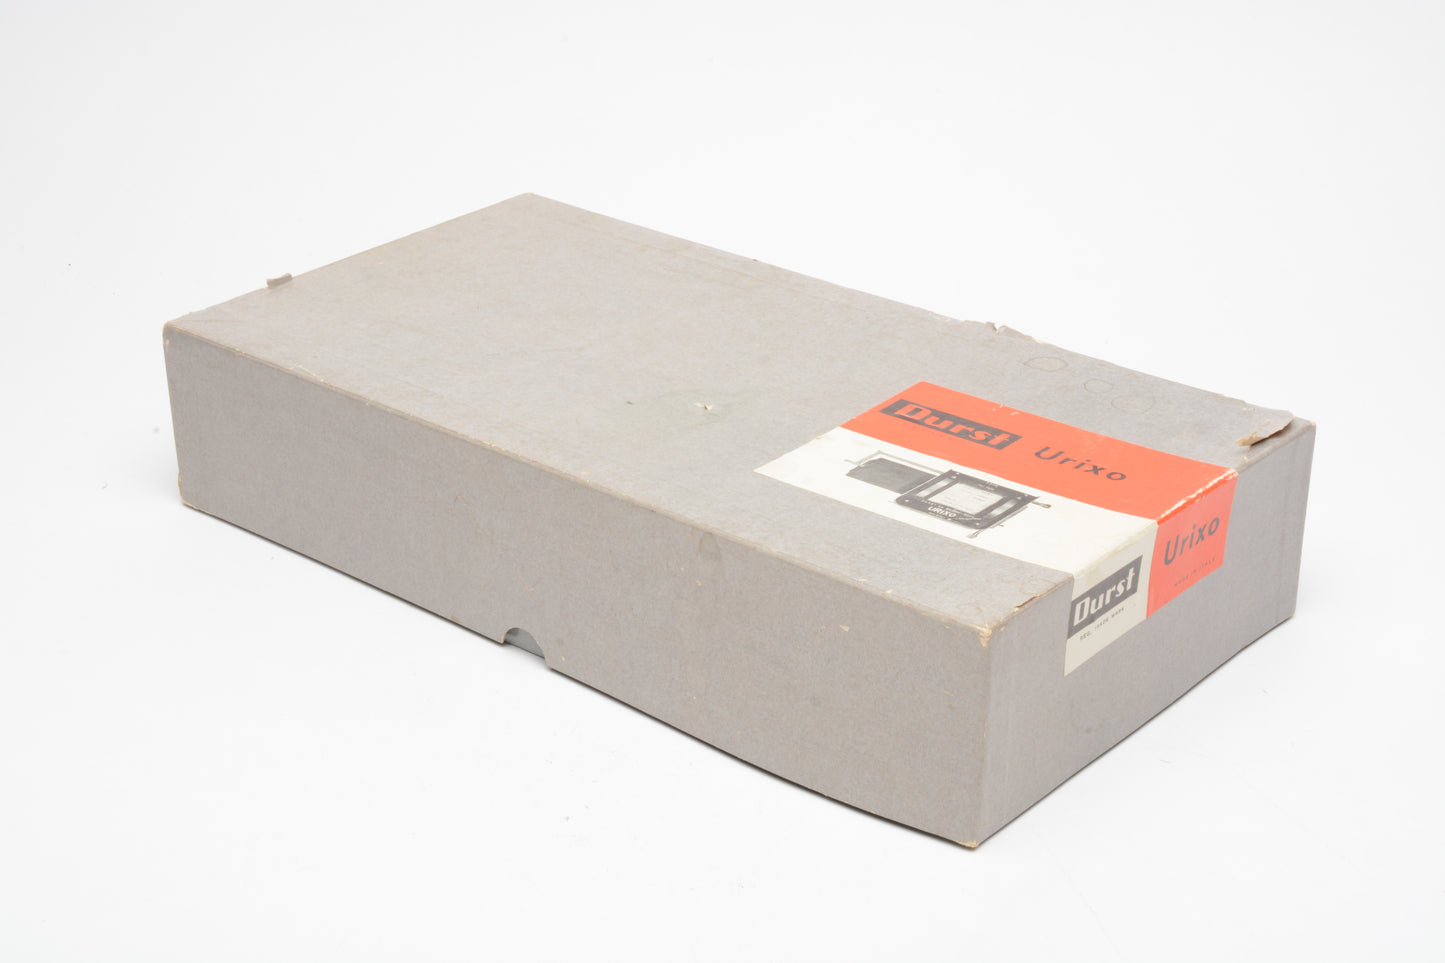 Durst 606 Urixo Deluxe Copying Cassette, boxed, w/sheet film holder